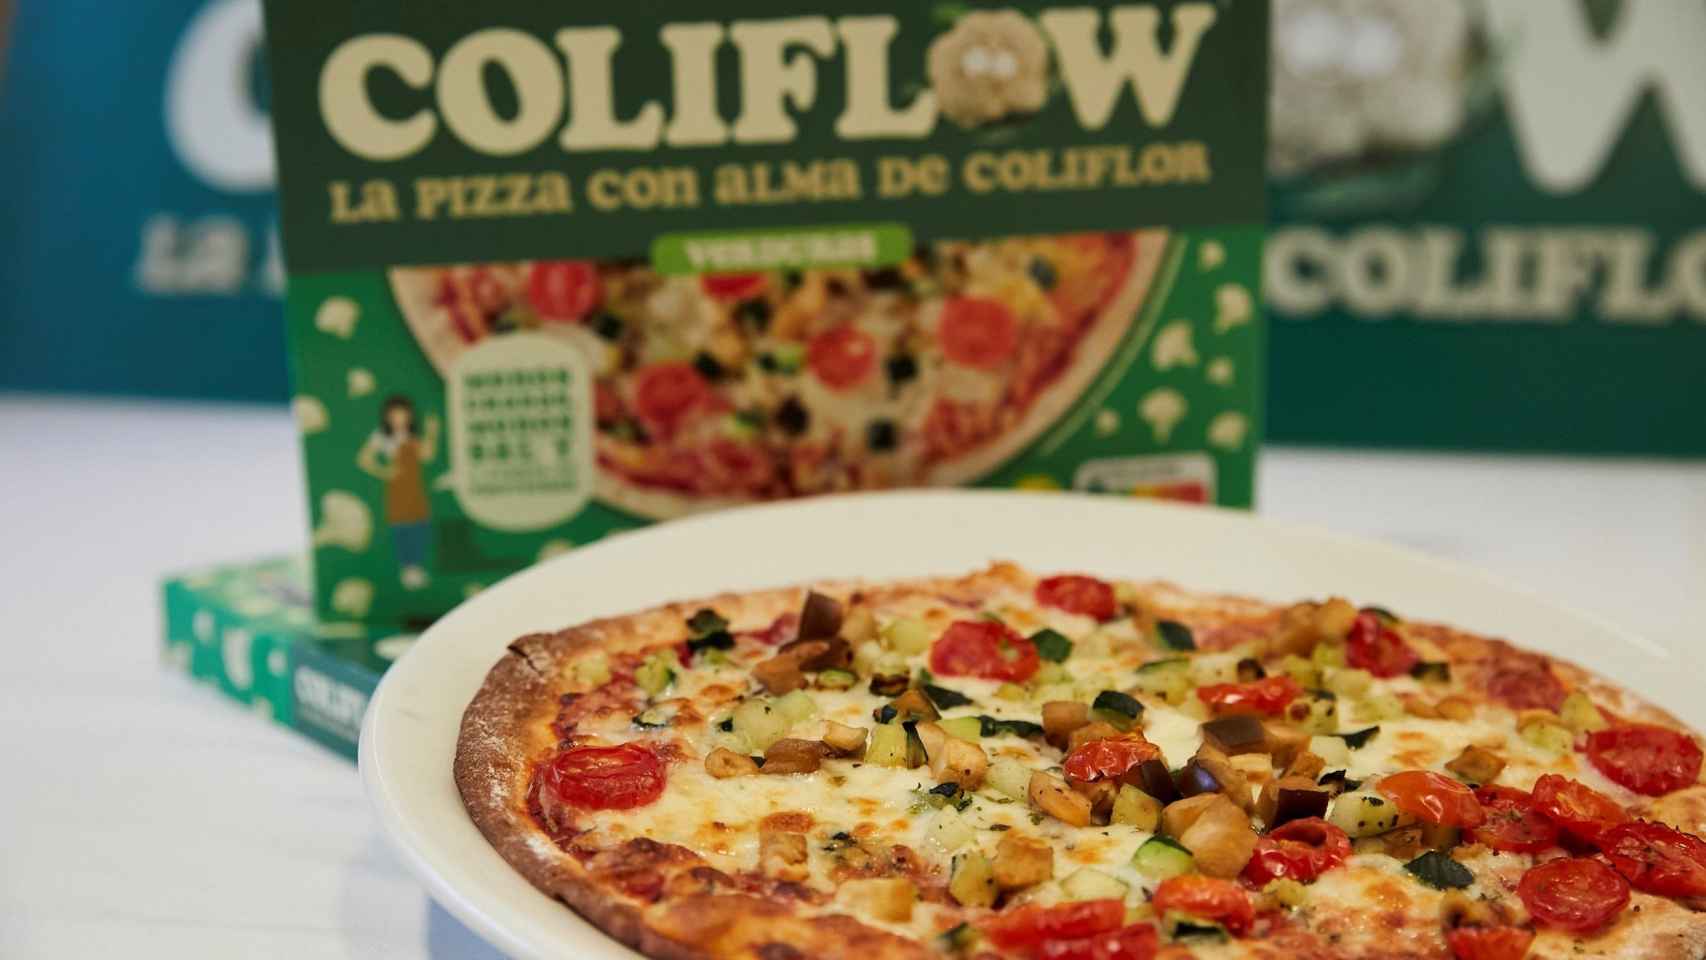 Coliflow, la marca de pizzas saludables con base de coliflor que se ha aliado con Glovo / SERVIMEDIA